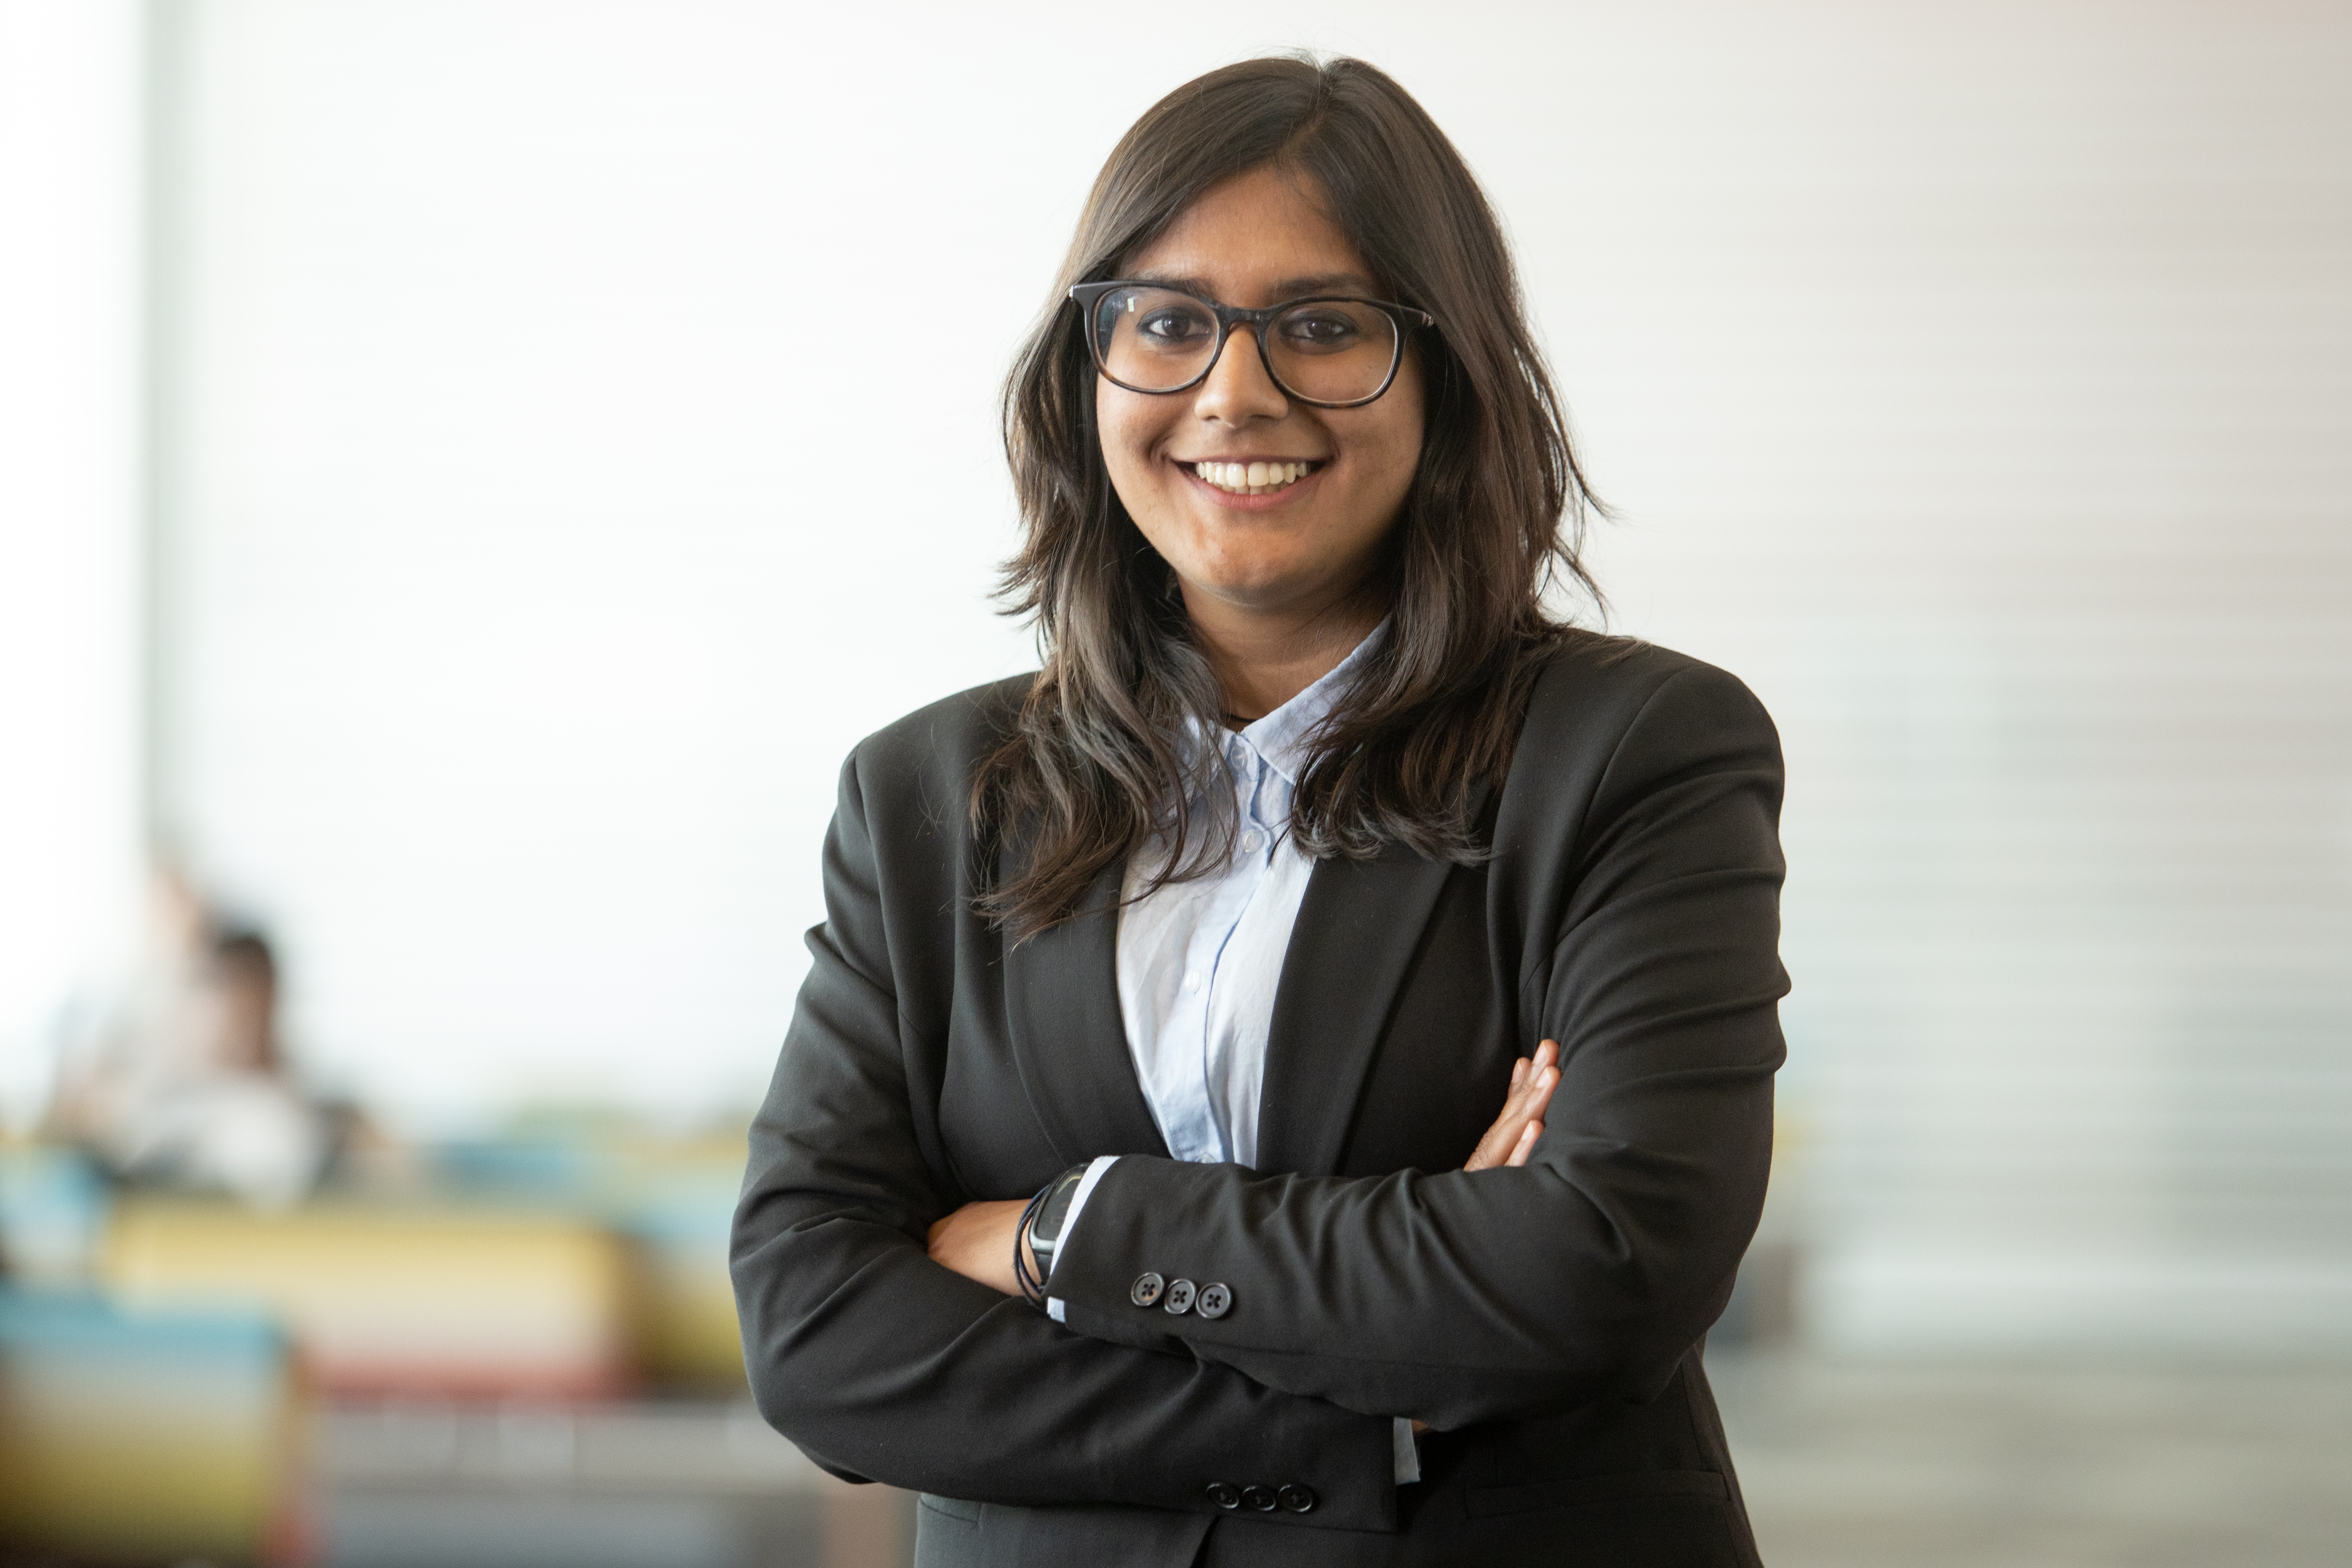 Sahitya Angara, MS in Business Analytics 2020